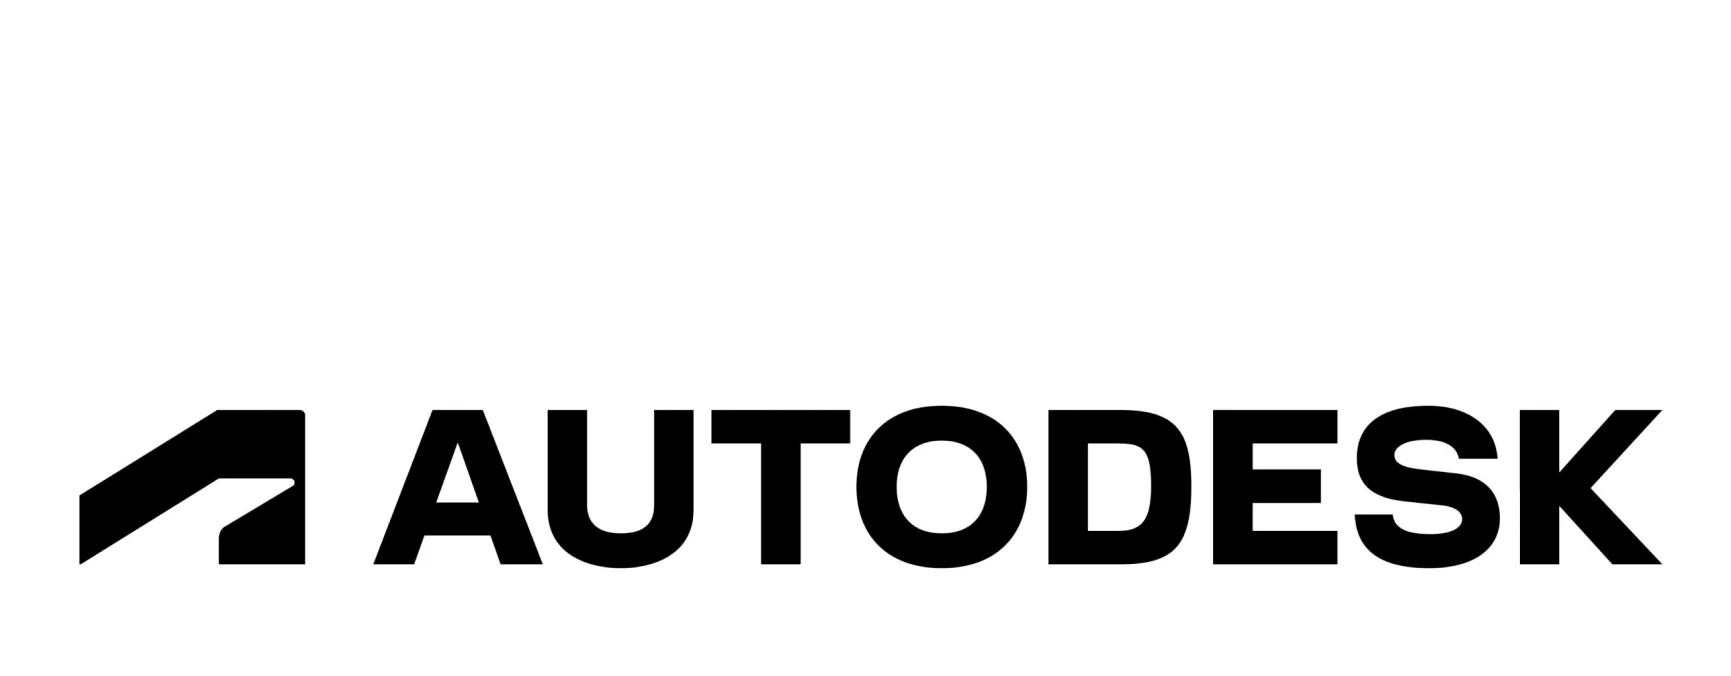 Компания AutoDesk публично заявила, что завершает свою деятельность в России 